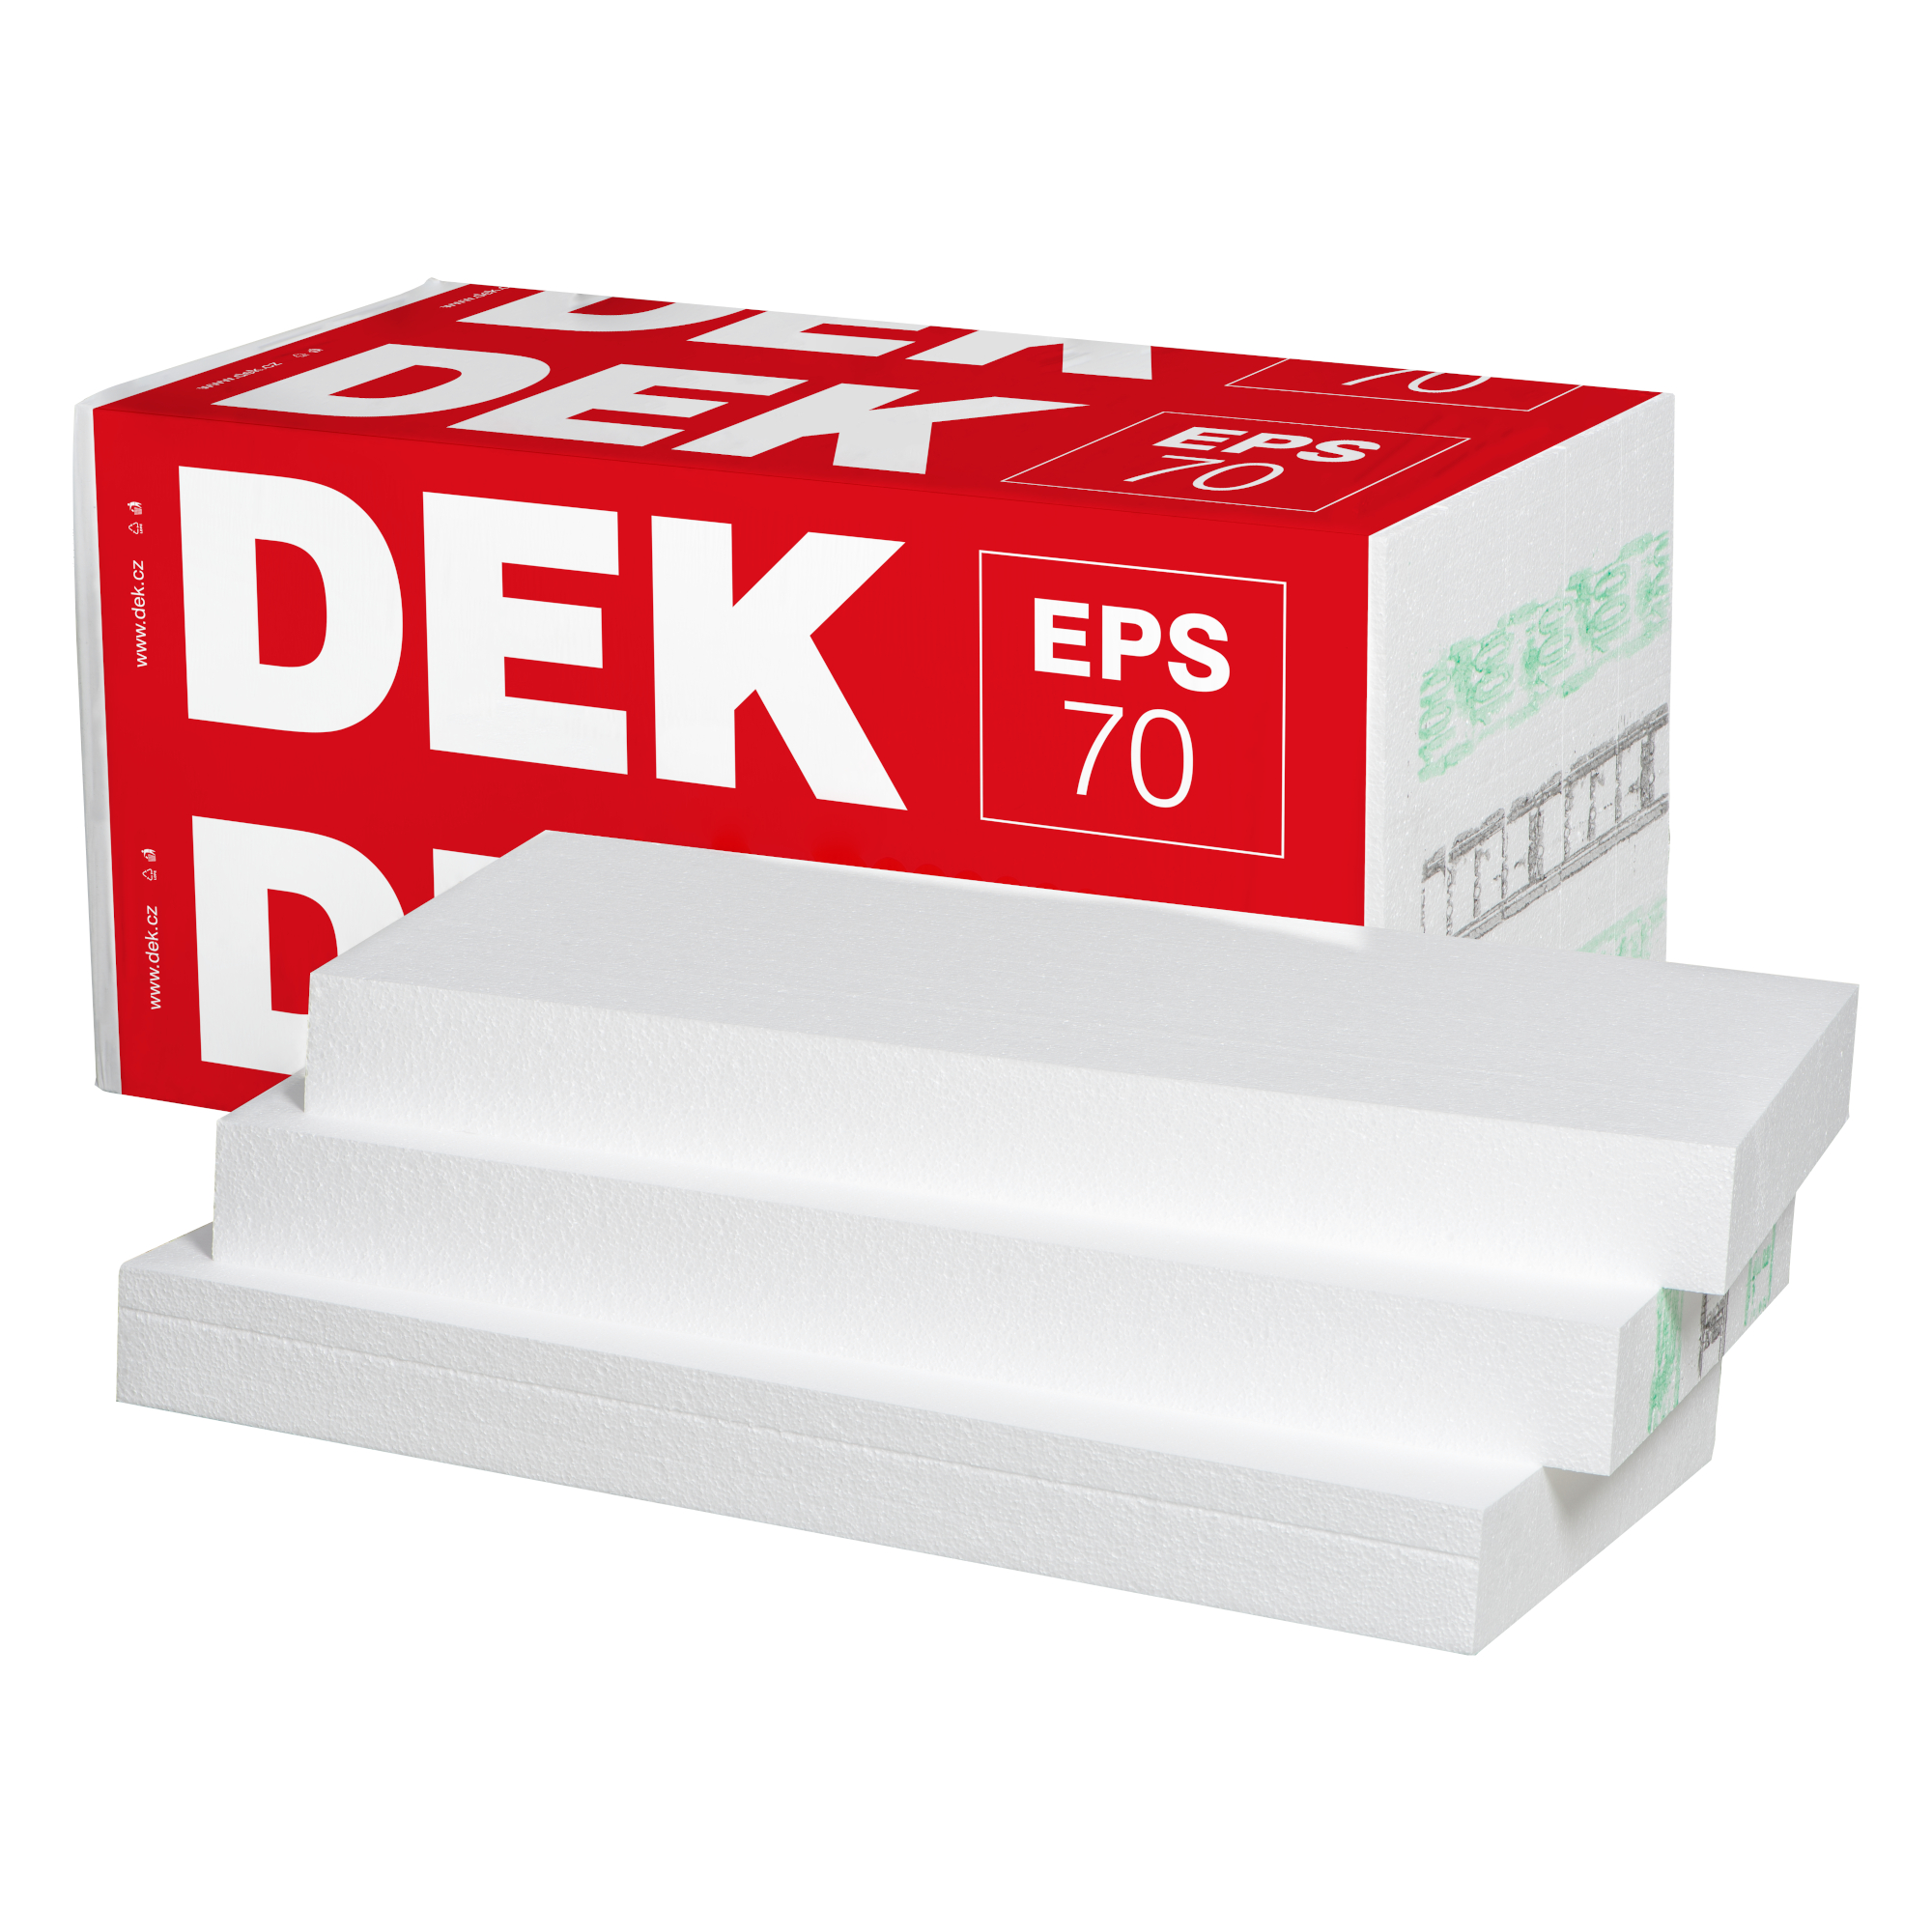 Tepelná izolace DEK EPS 70 F 150 mm (1